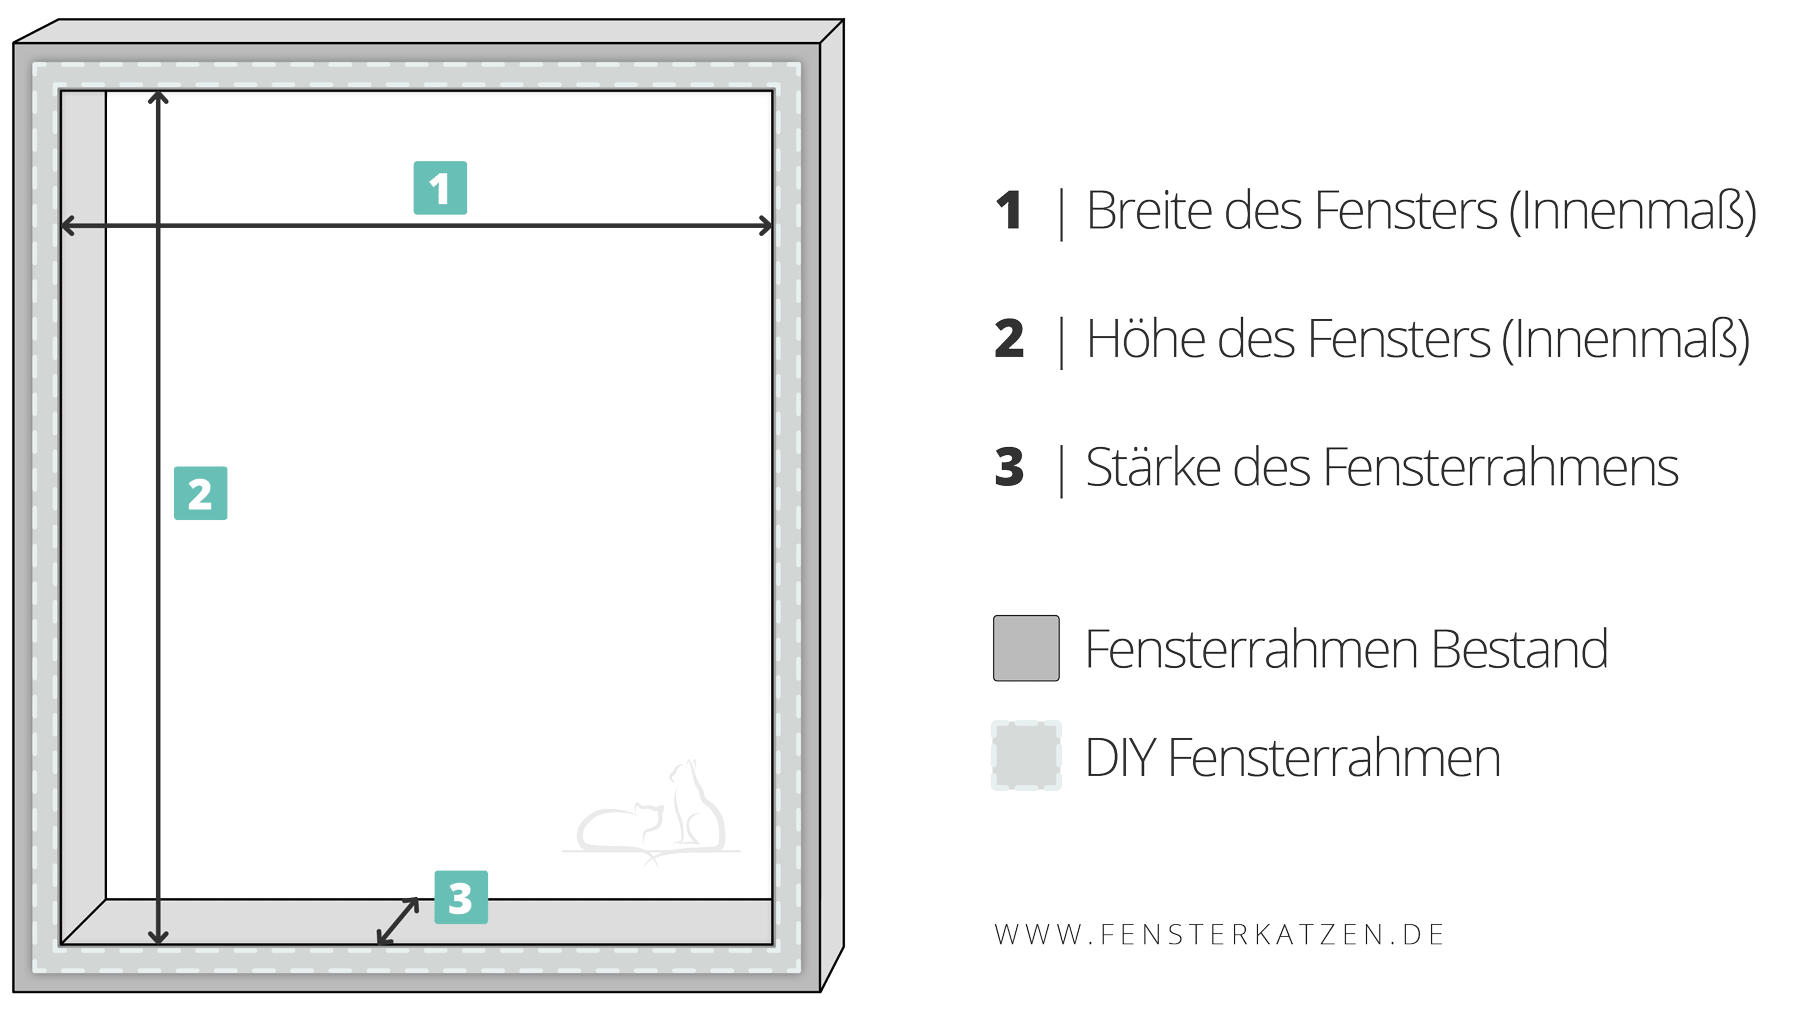 Fensterkatzen-DIY-Do-It-Yourself-Fenstersicherung-Katzen-ohne-bohren-Grafik-Maße